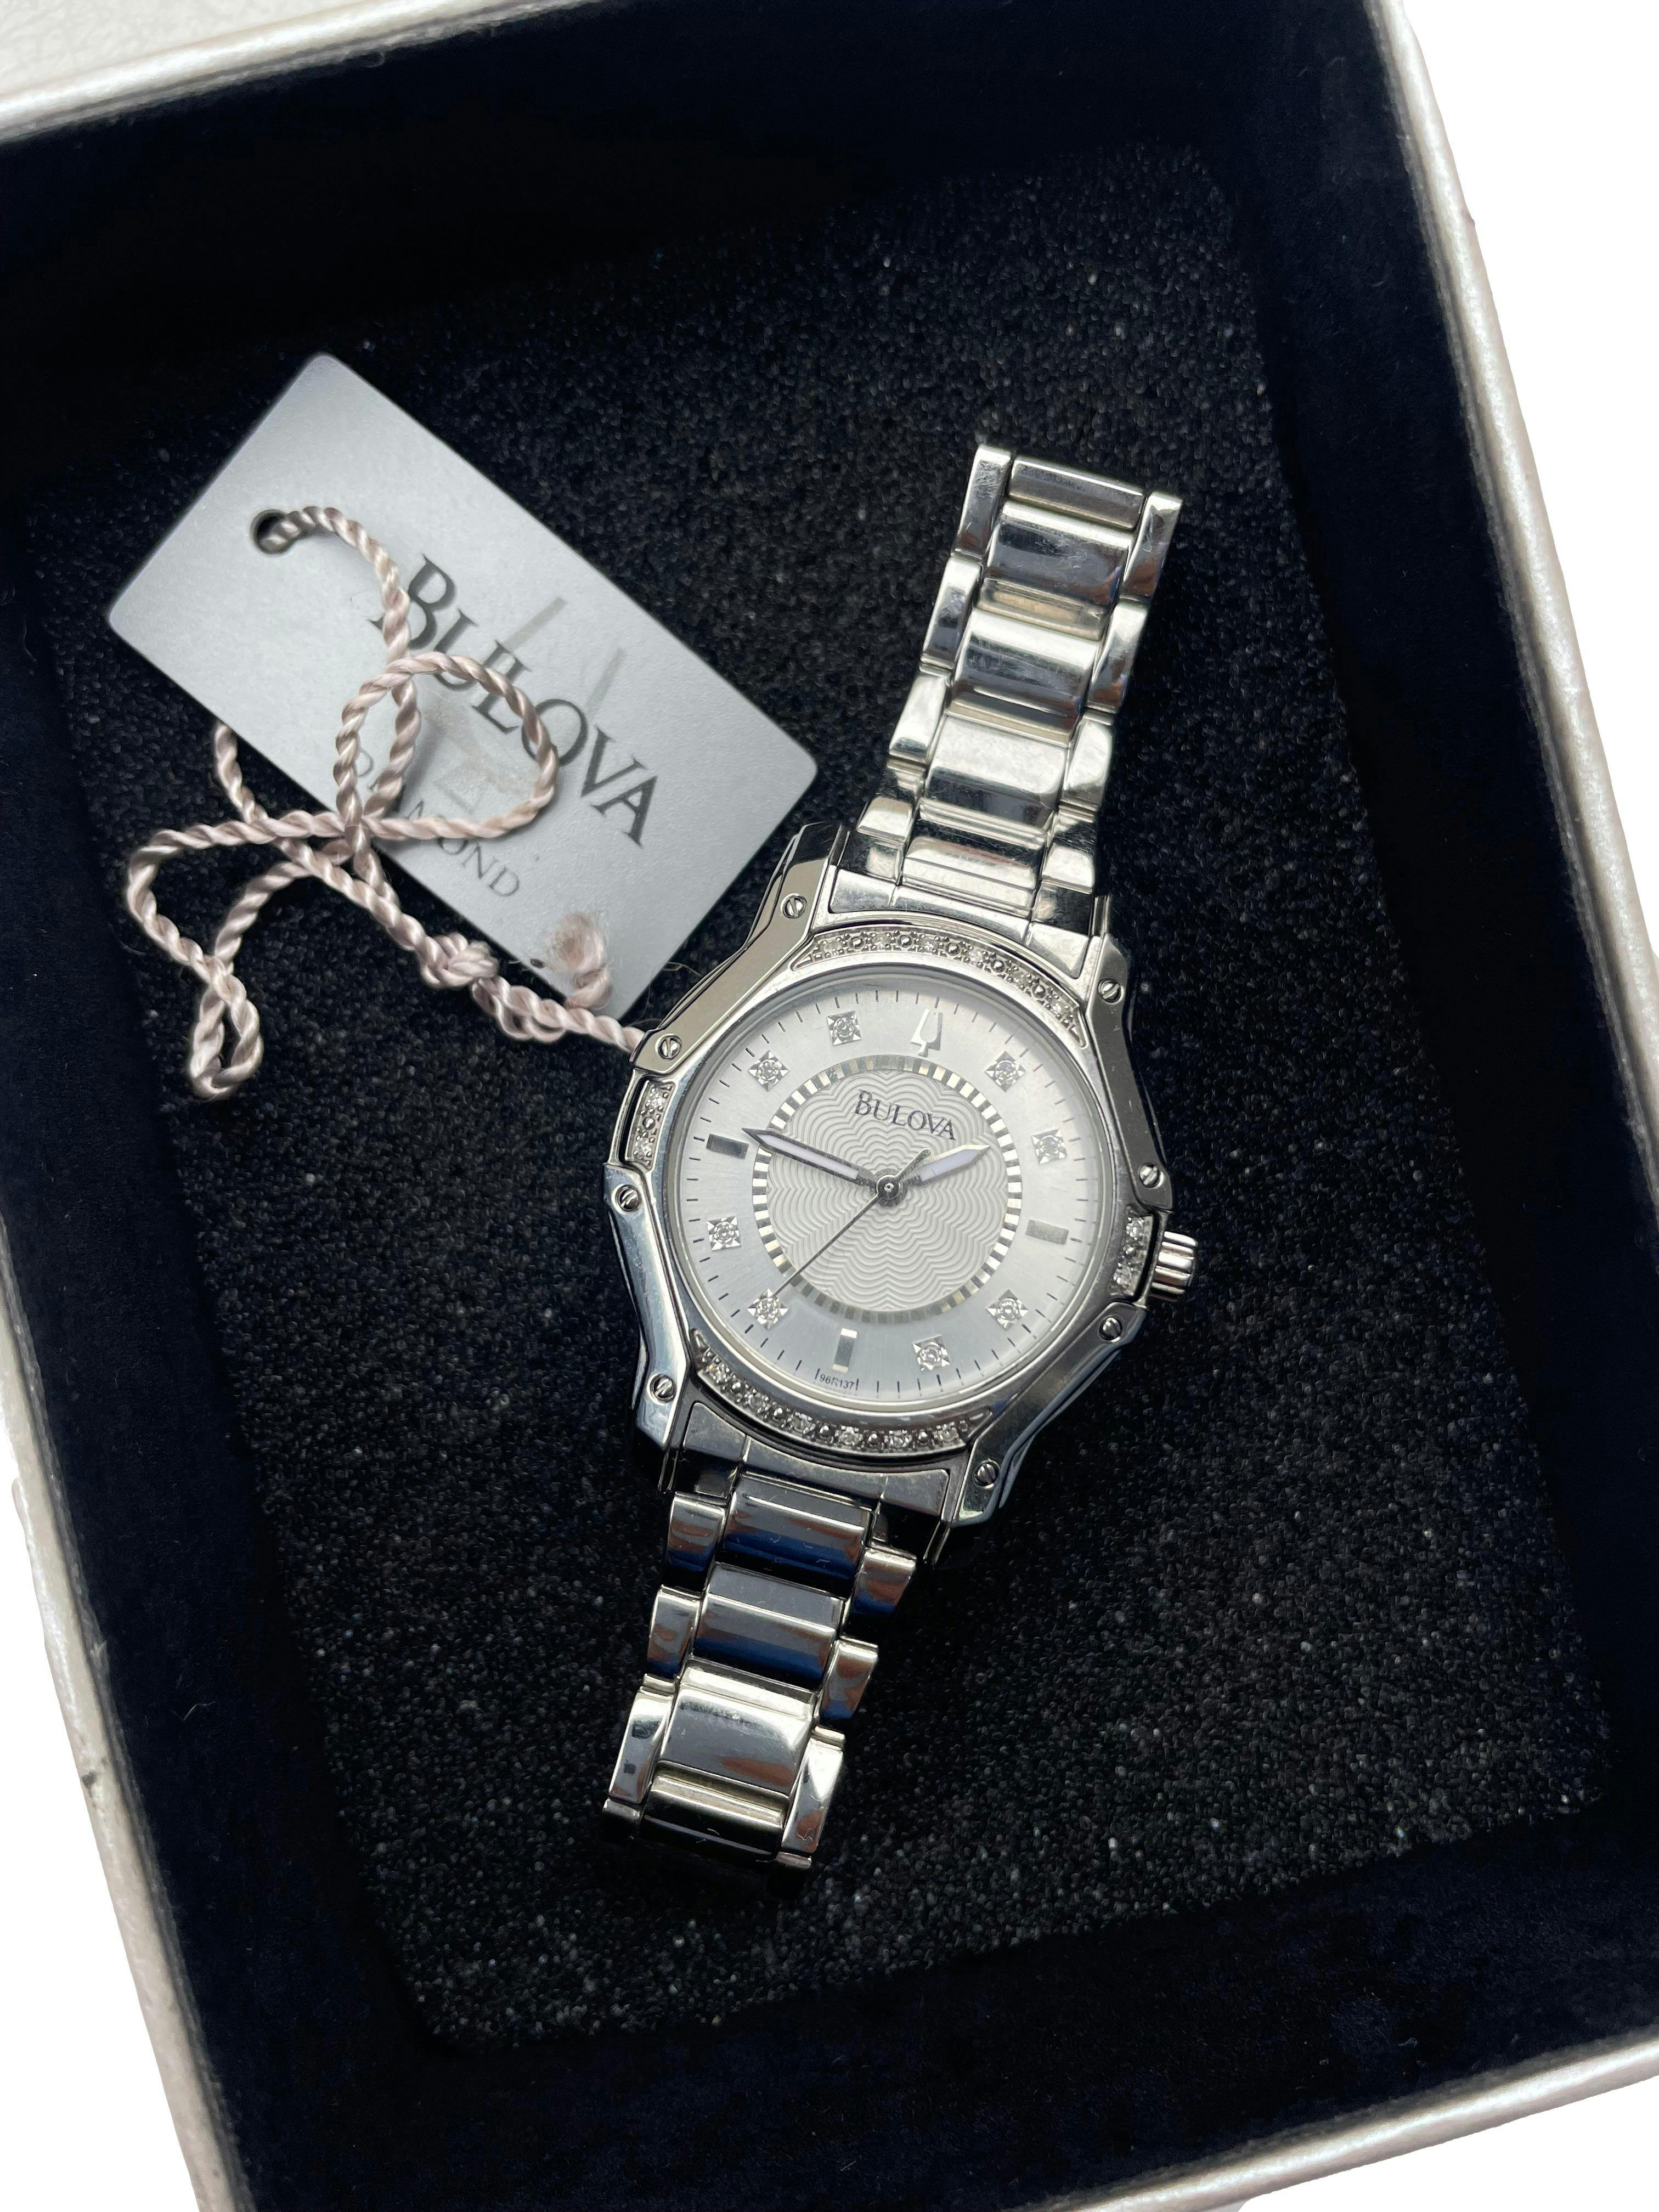 Reloj Bulova Diamond de acero inoxidable plateado, water resistant, stainless steel. Diámetro del reloj 3cm.